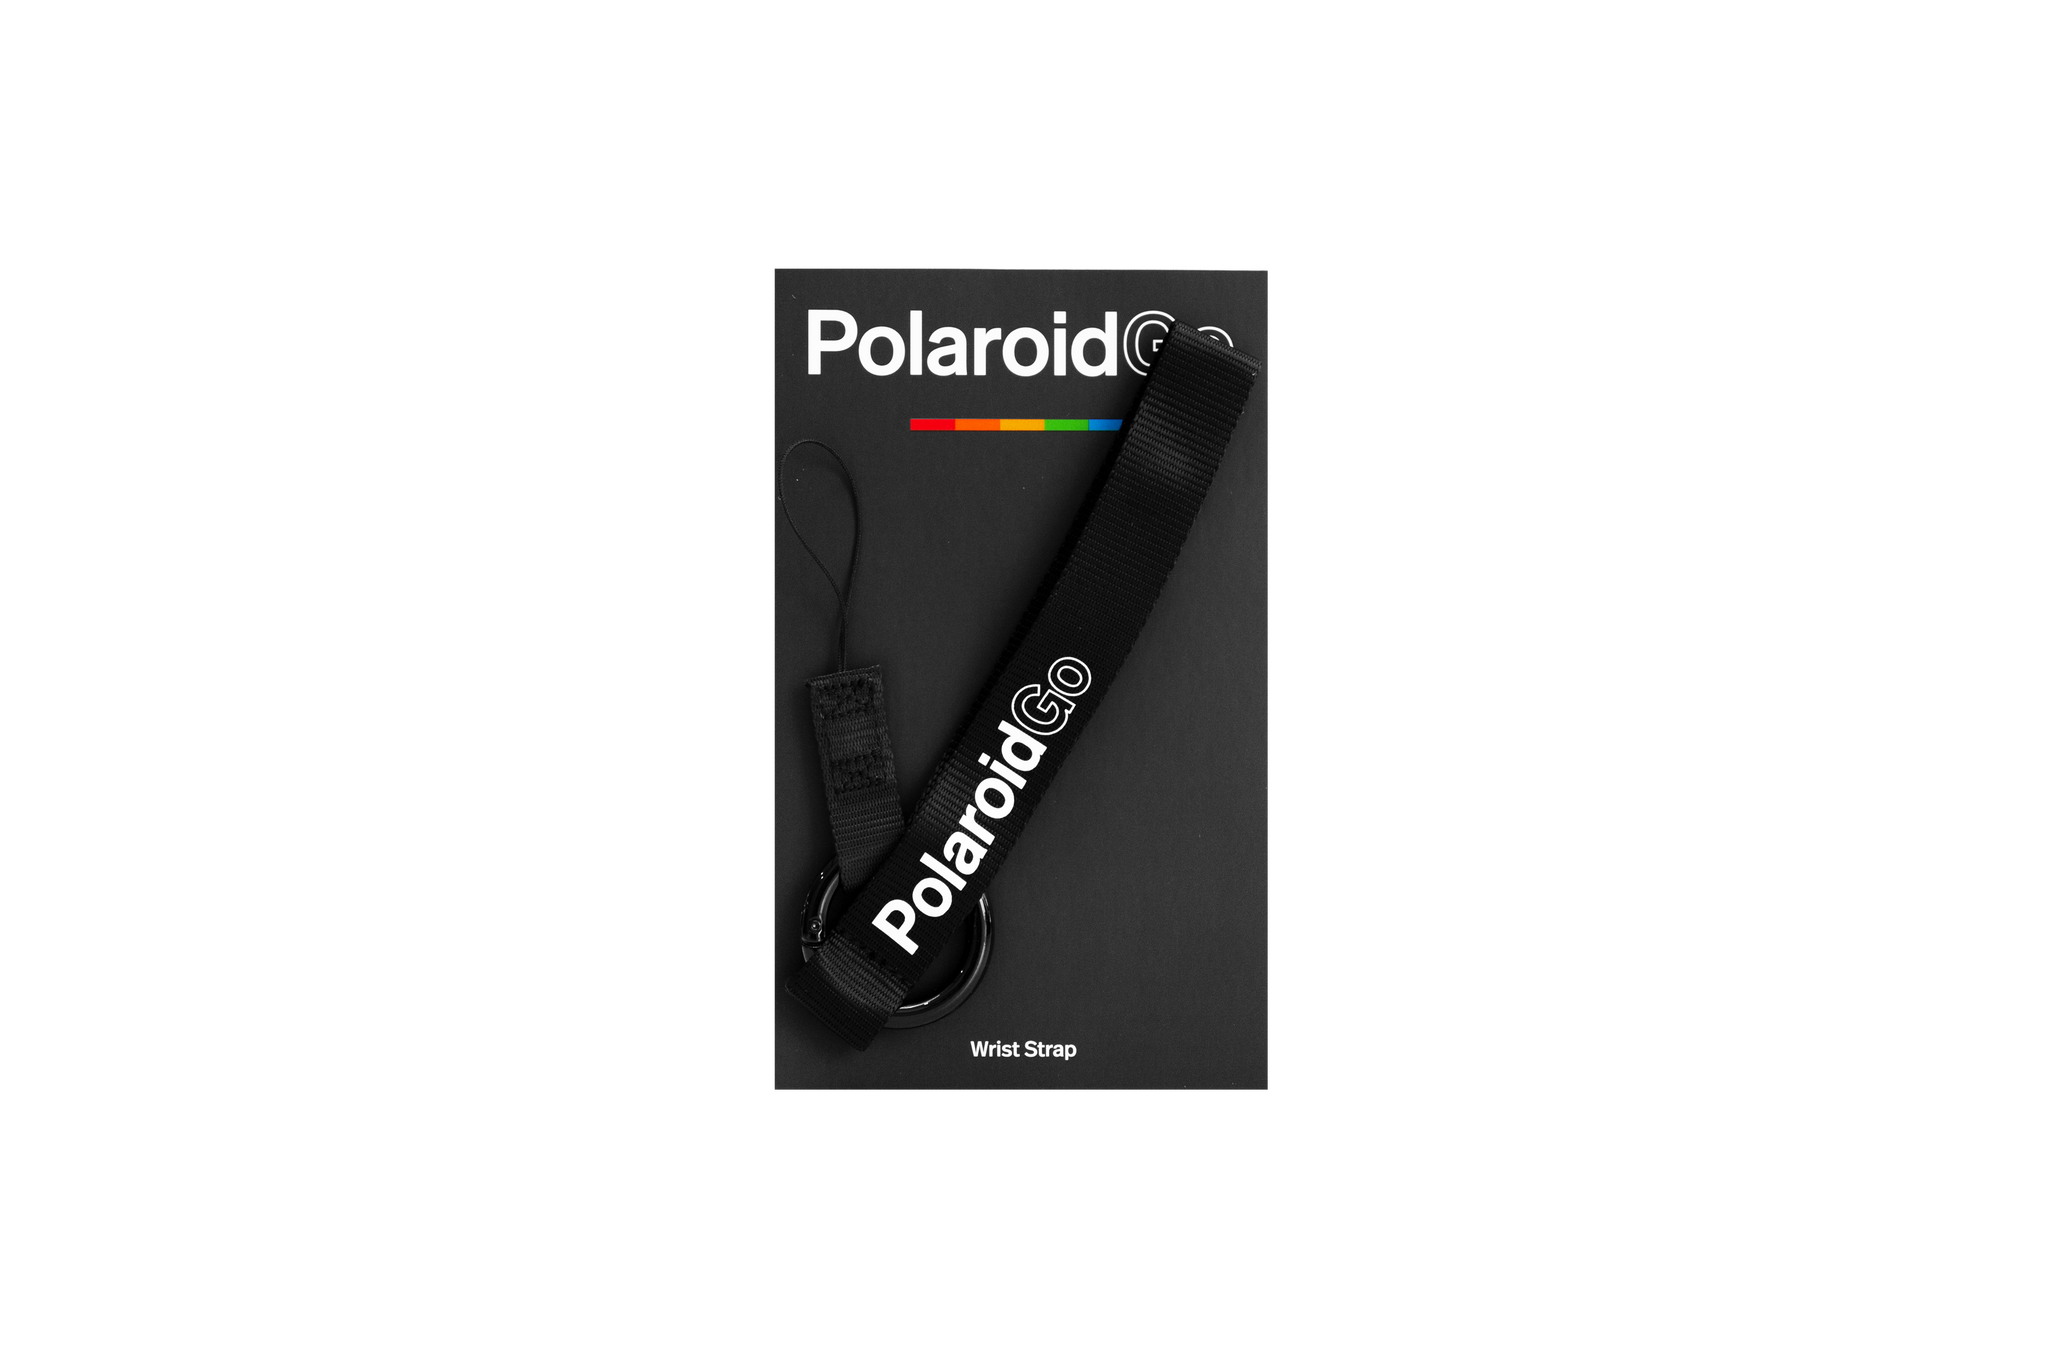 Polaroid Go Wrist Strap